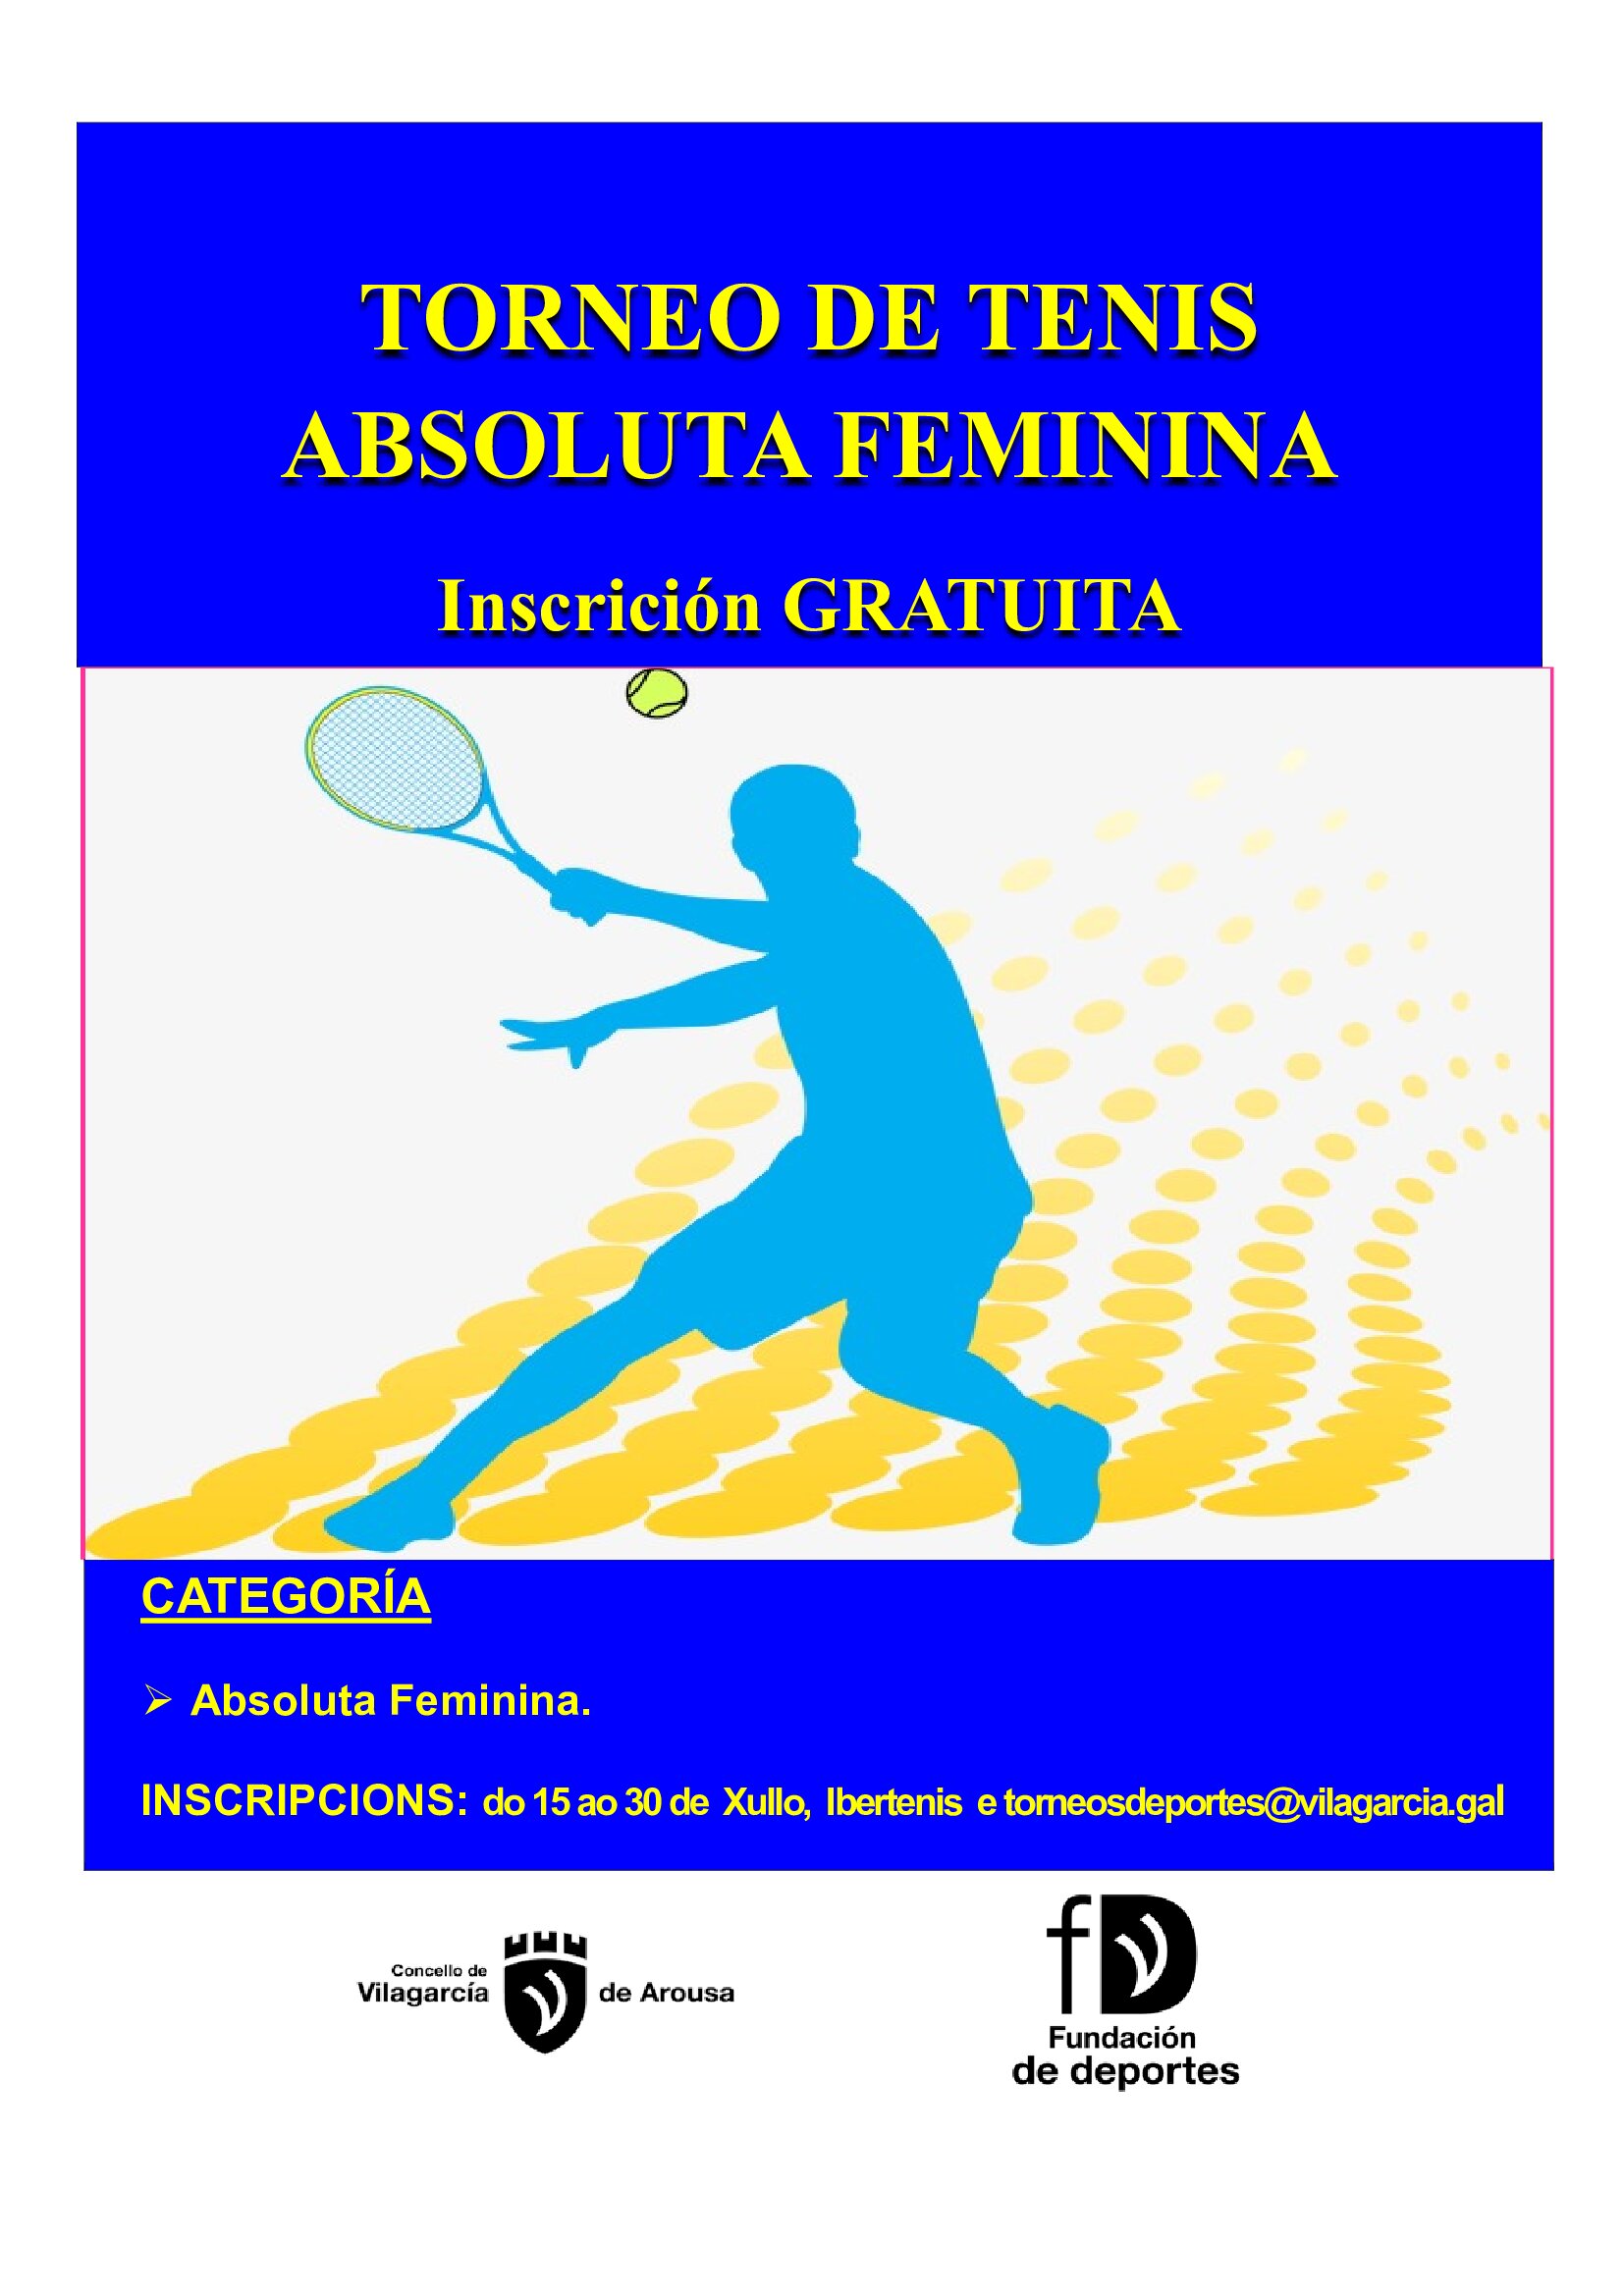 Torneo de tenis Absoluta Femenina